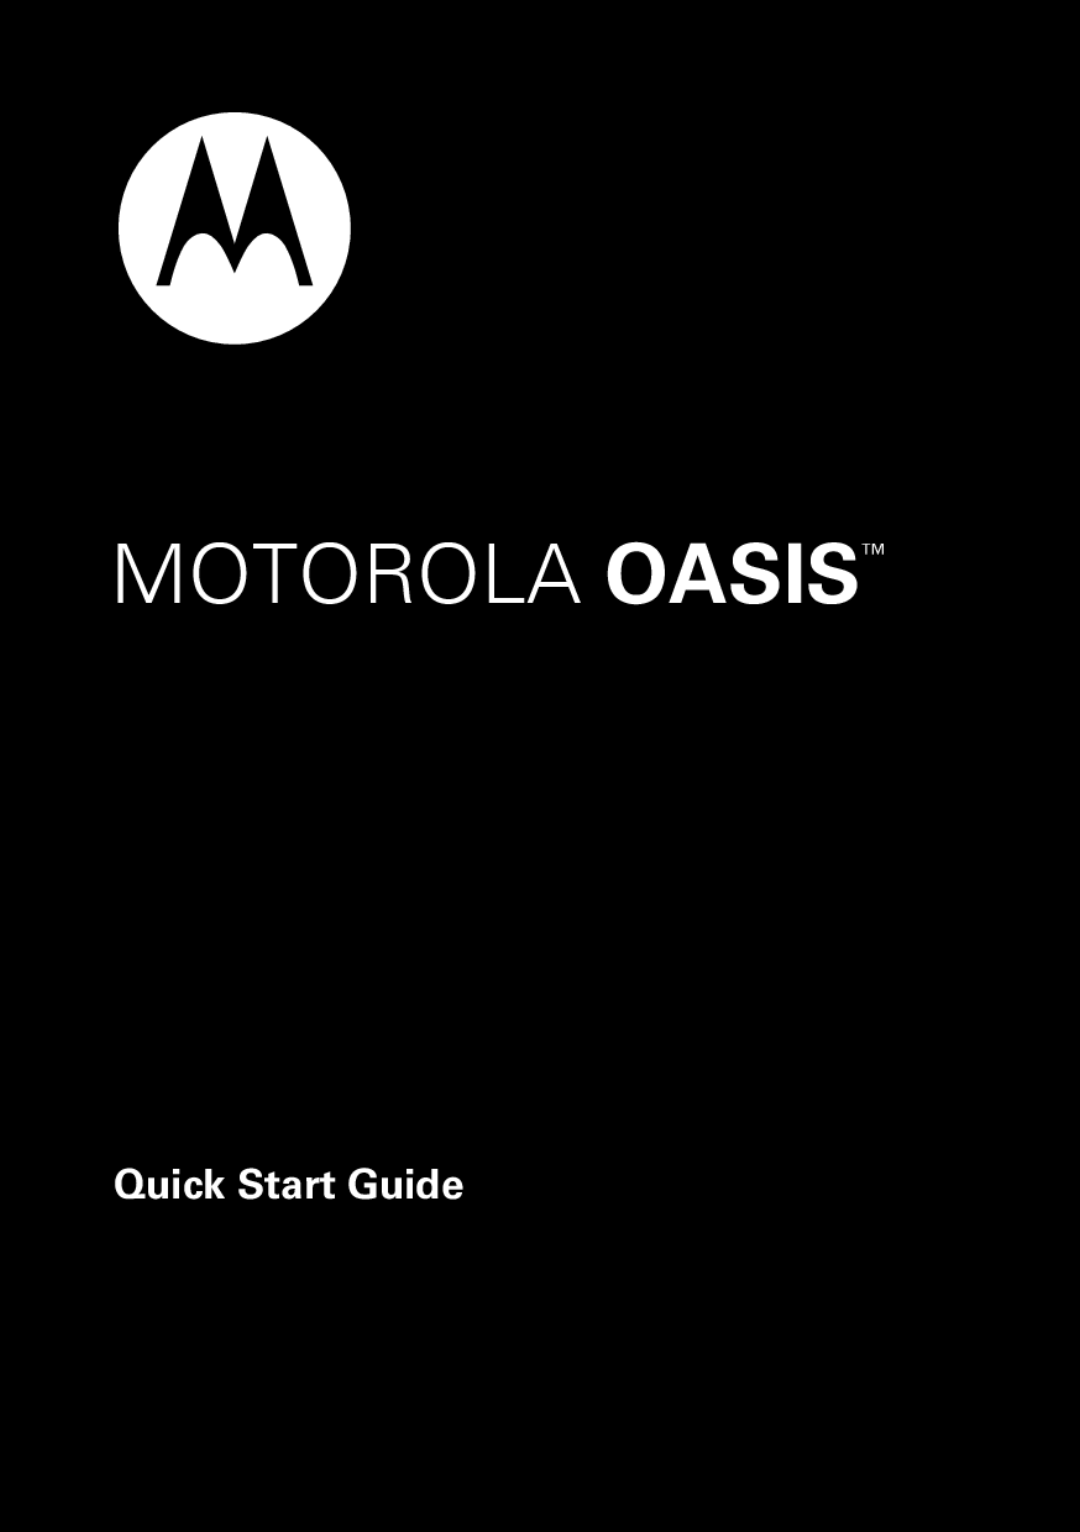 Motorola 89421n quick start Motorola Oasis, Quick Start Guide 